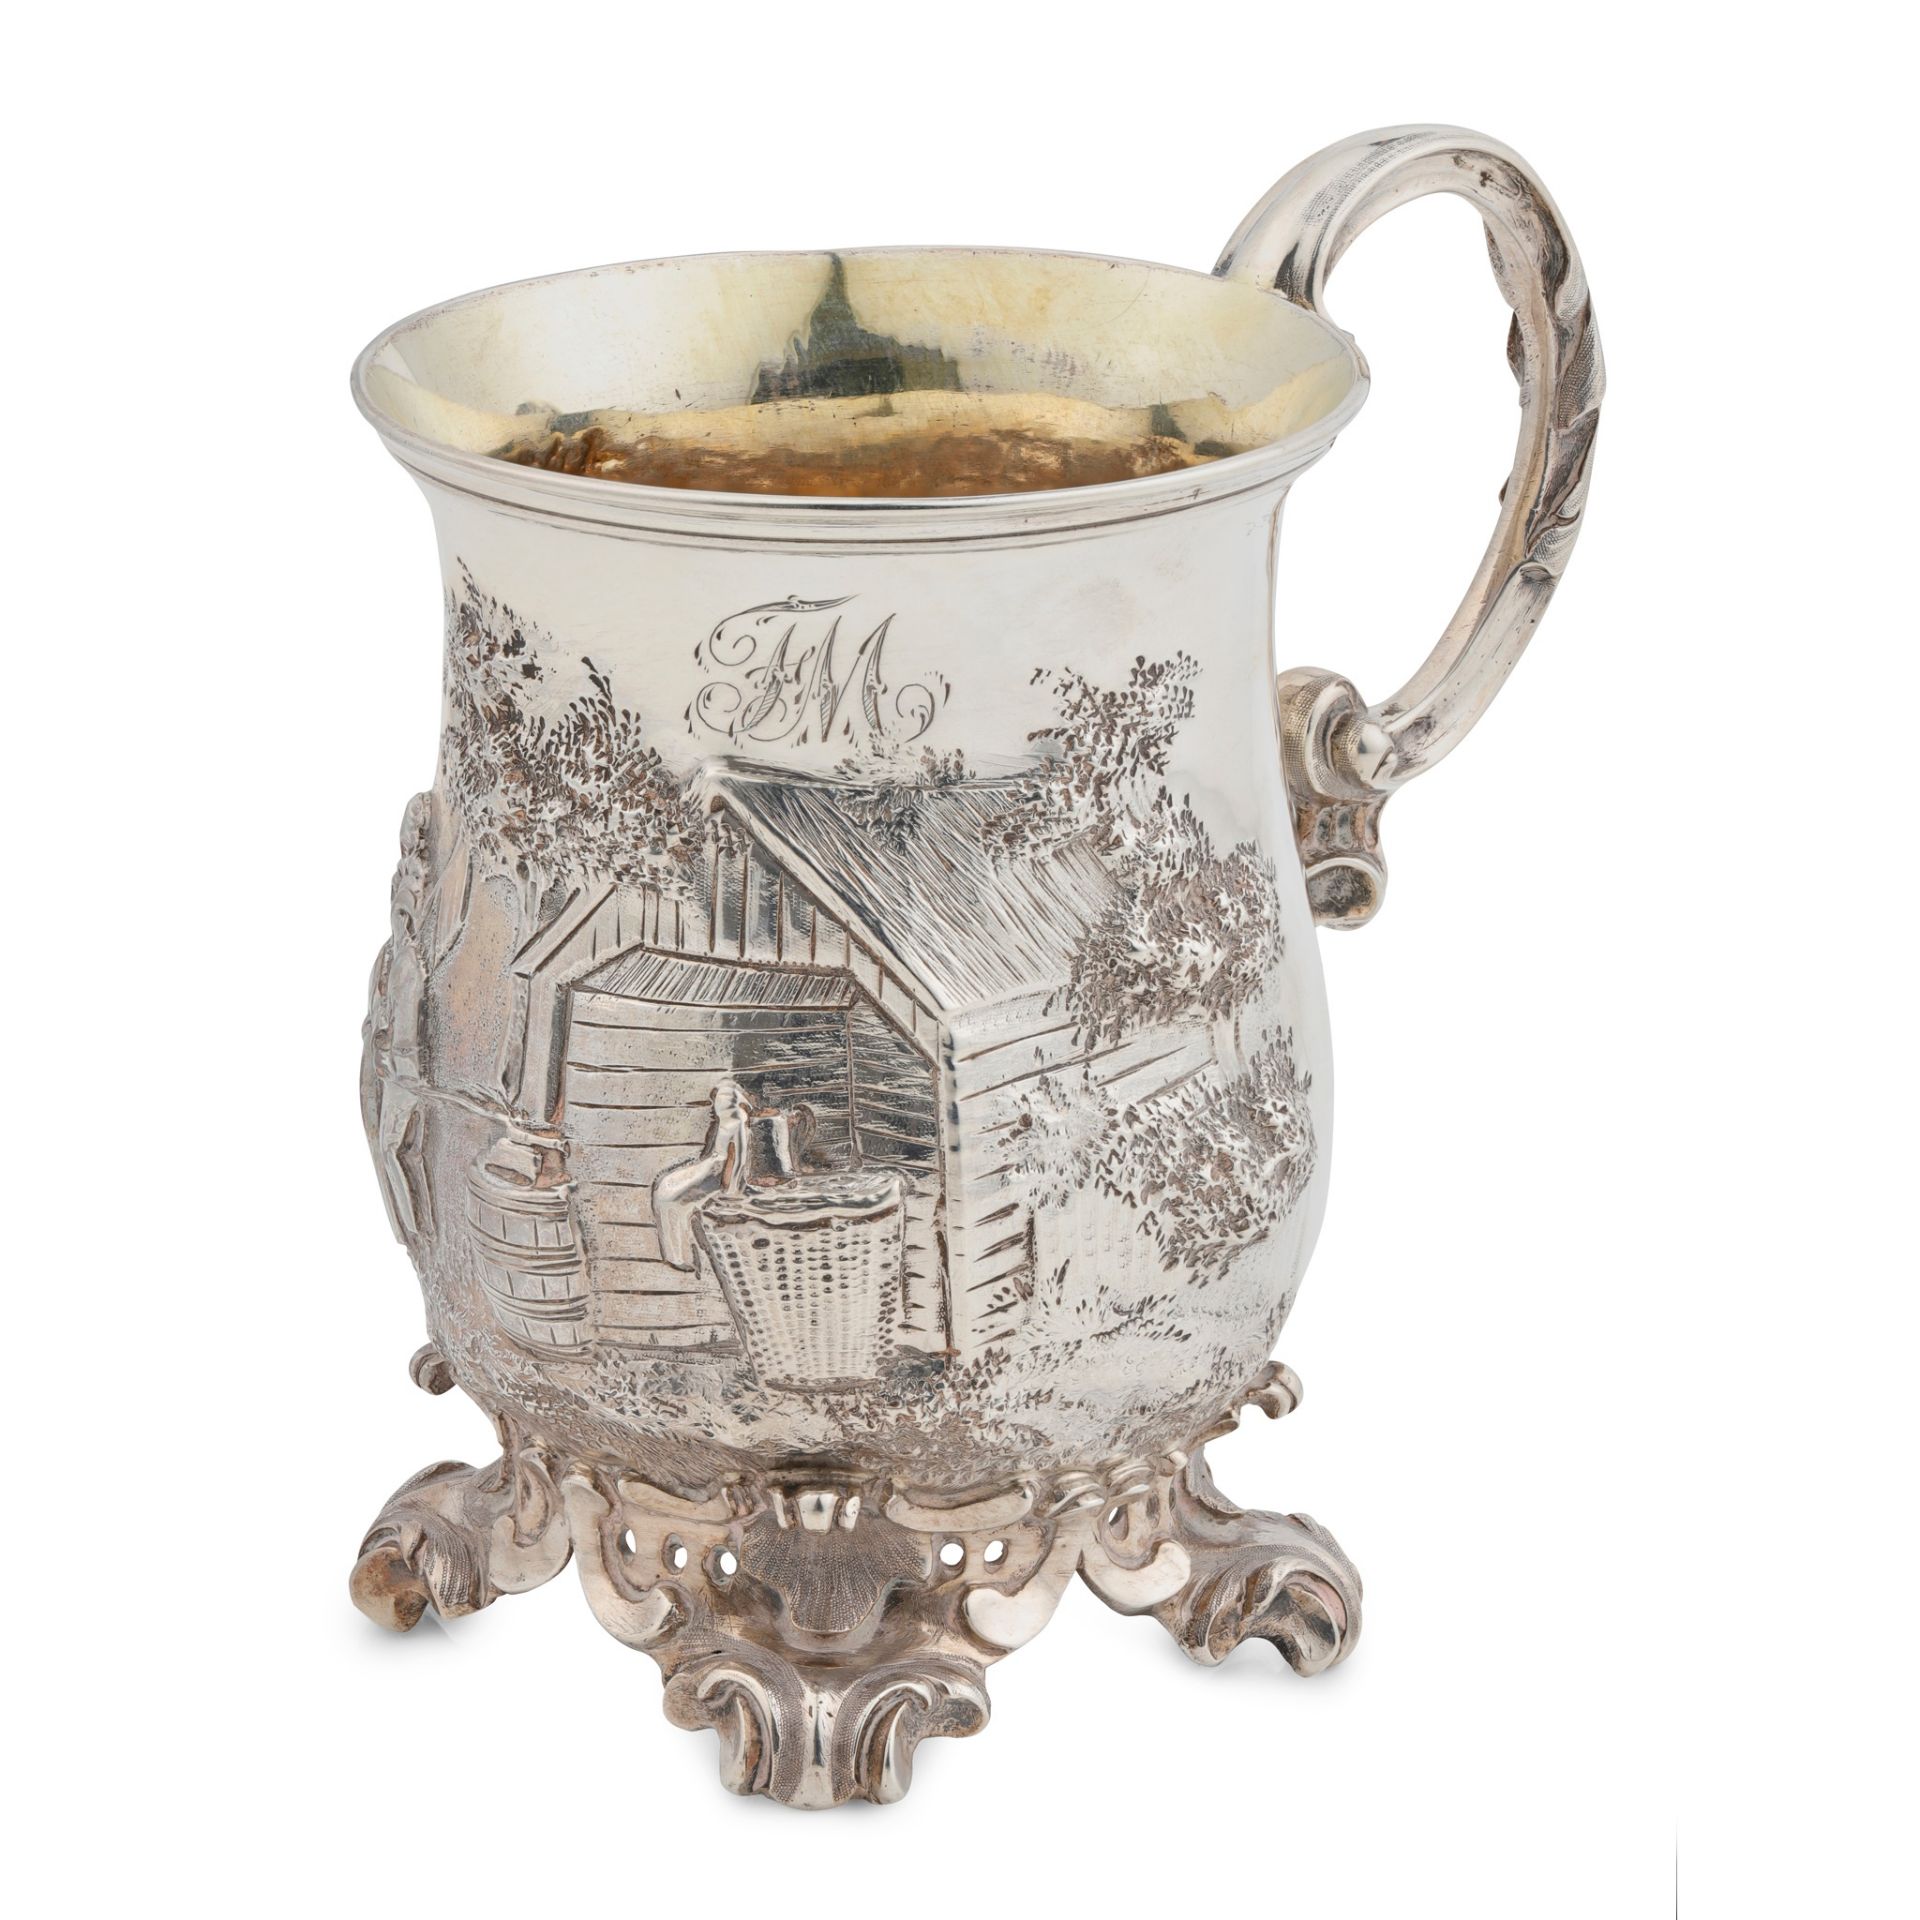 A mid Victorian christening mug